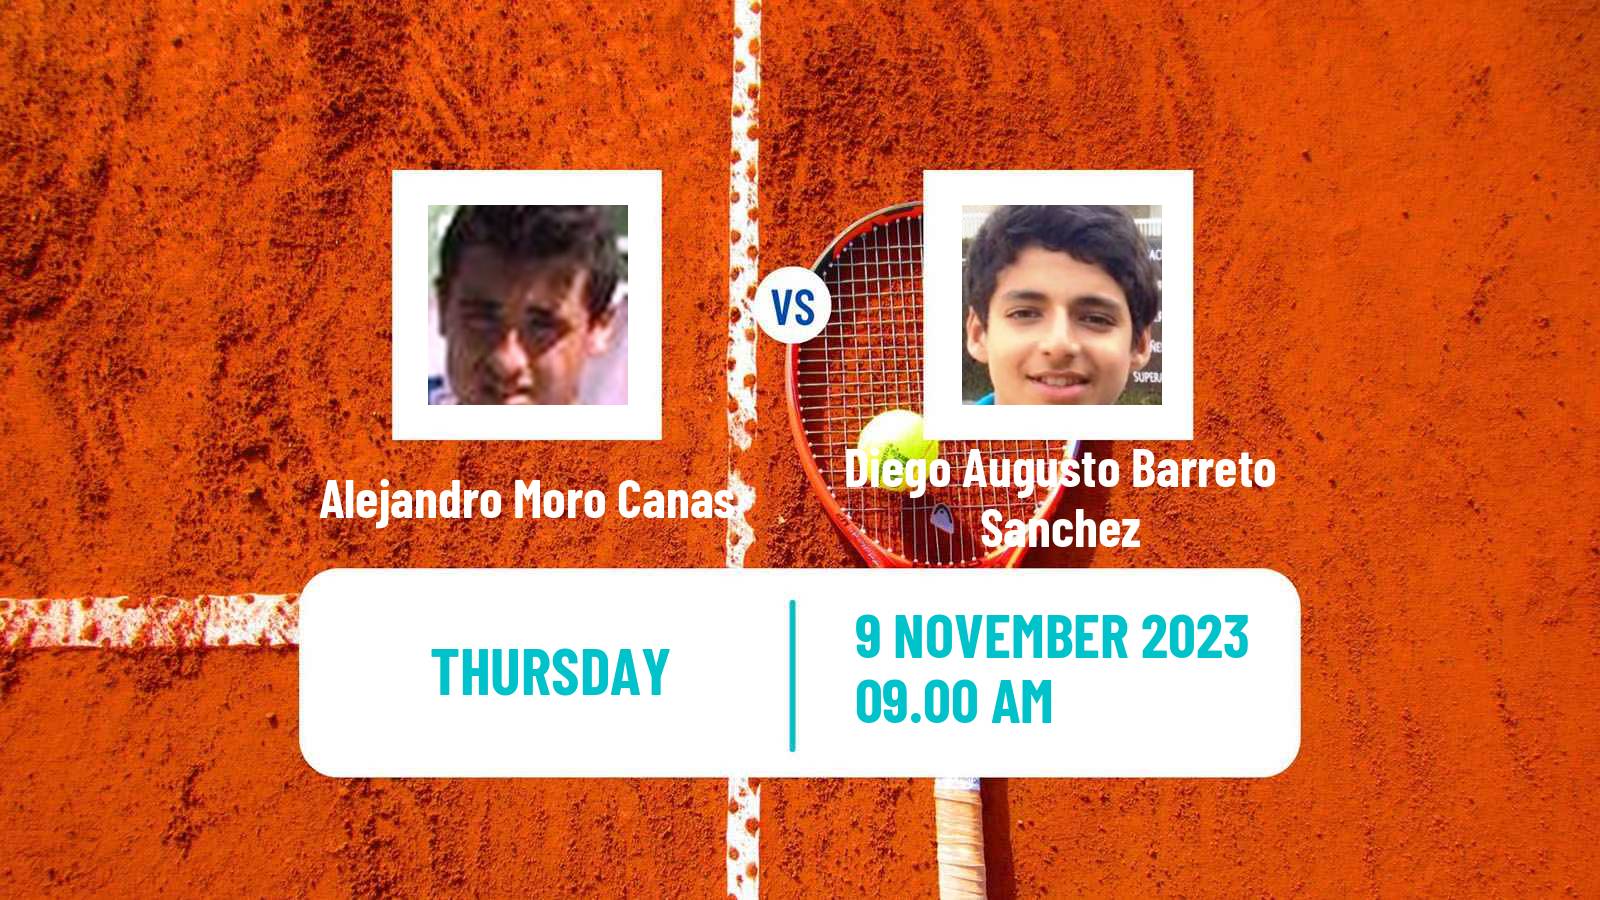 Tennis ITF M25 Benicarlo Men Alejandro Moro Canas - Diego Augusto Barreto Sanchez